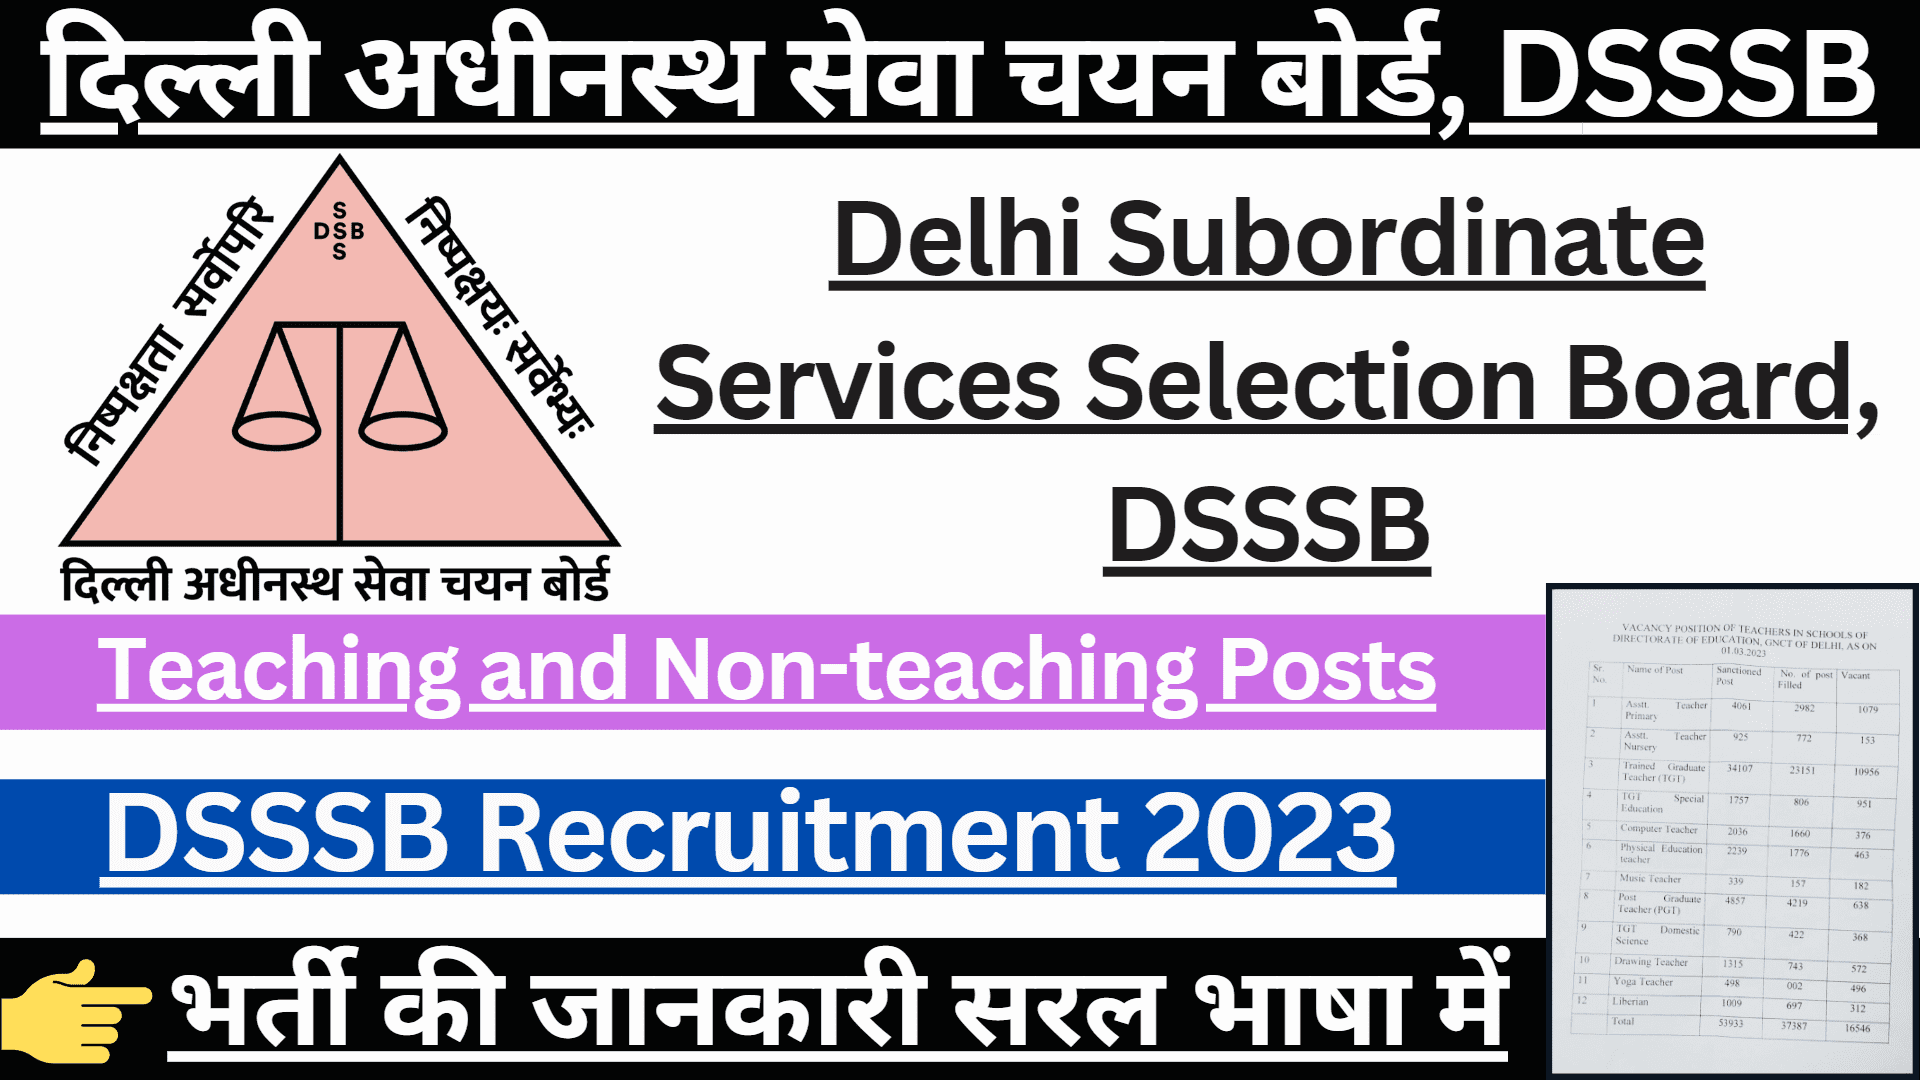 DSSSB Vacancy 2023